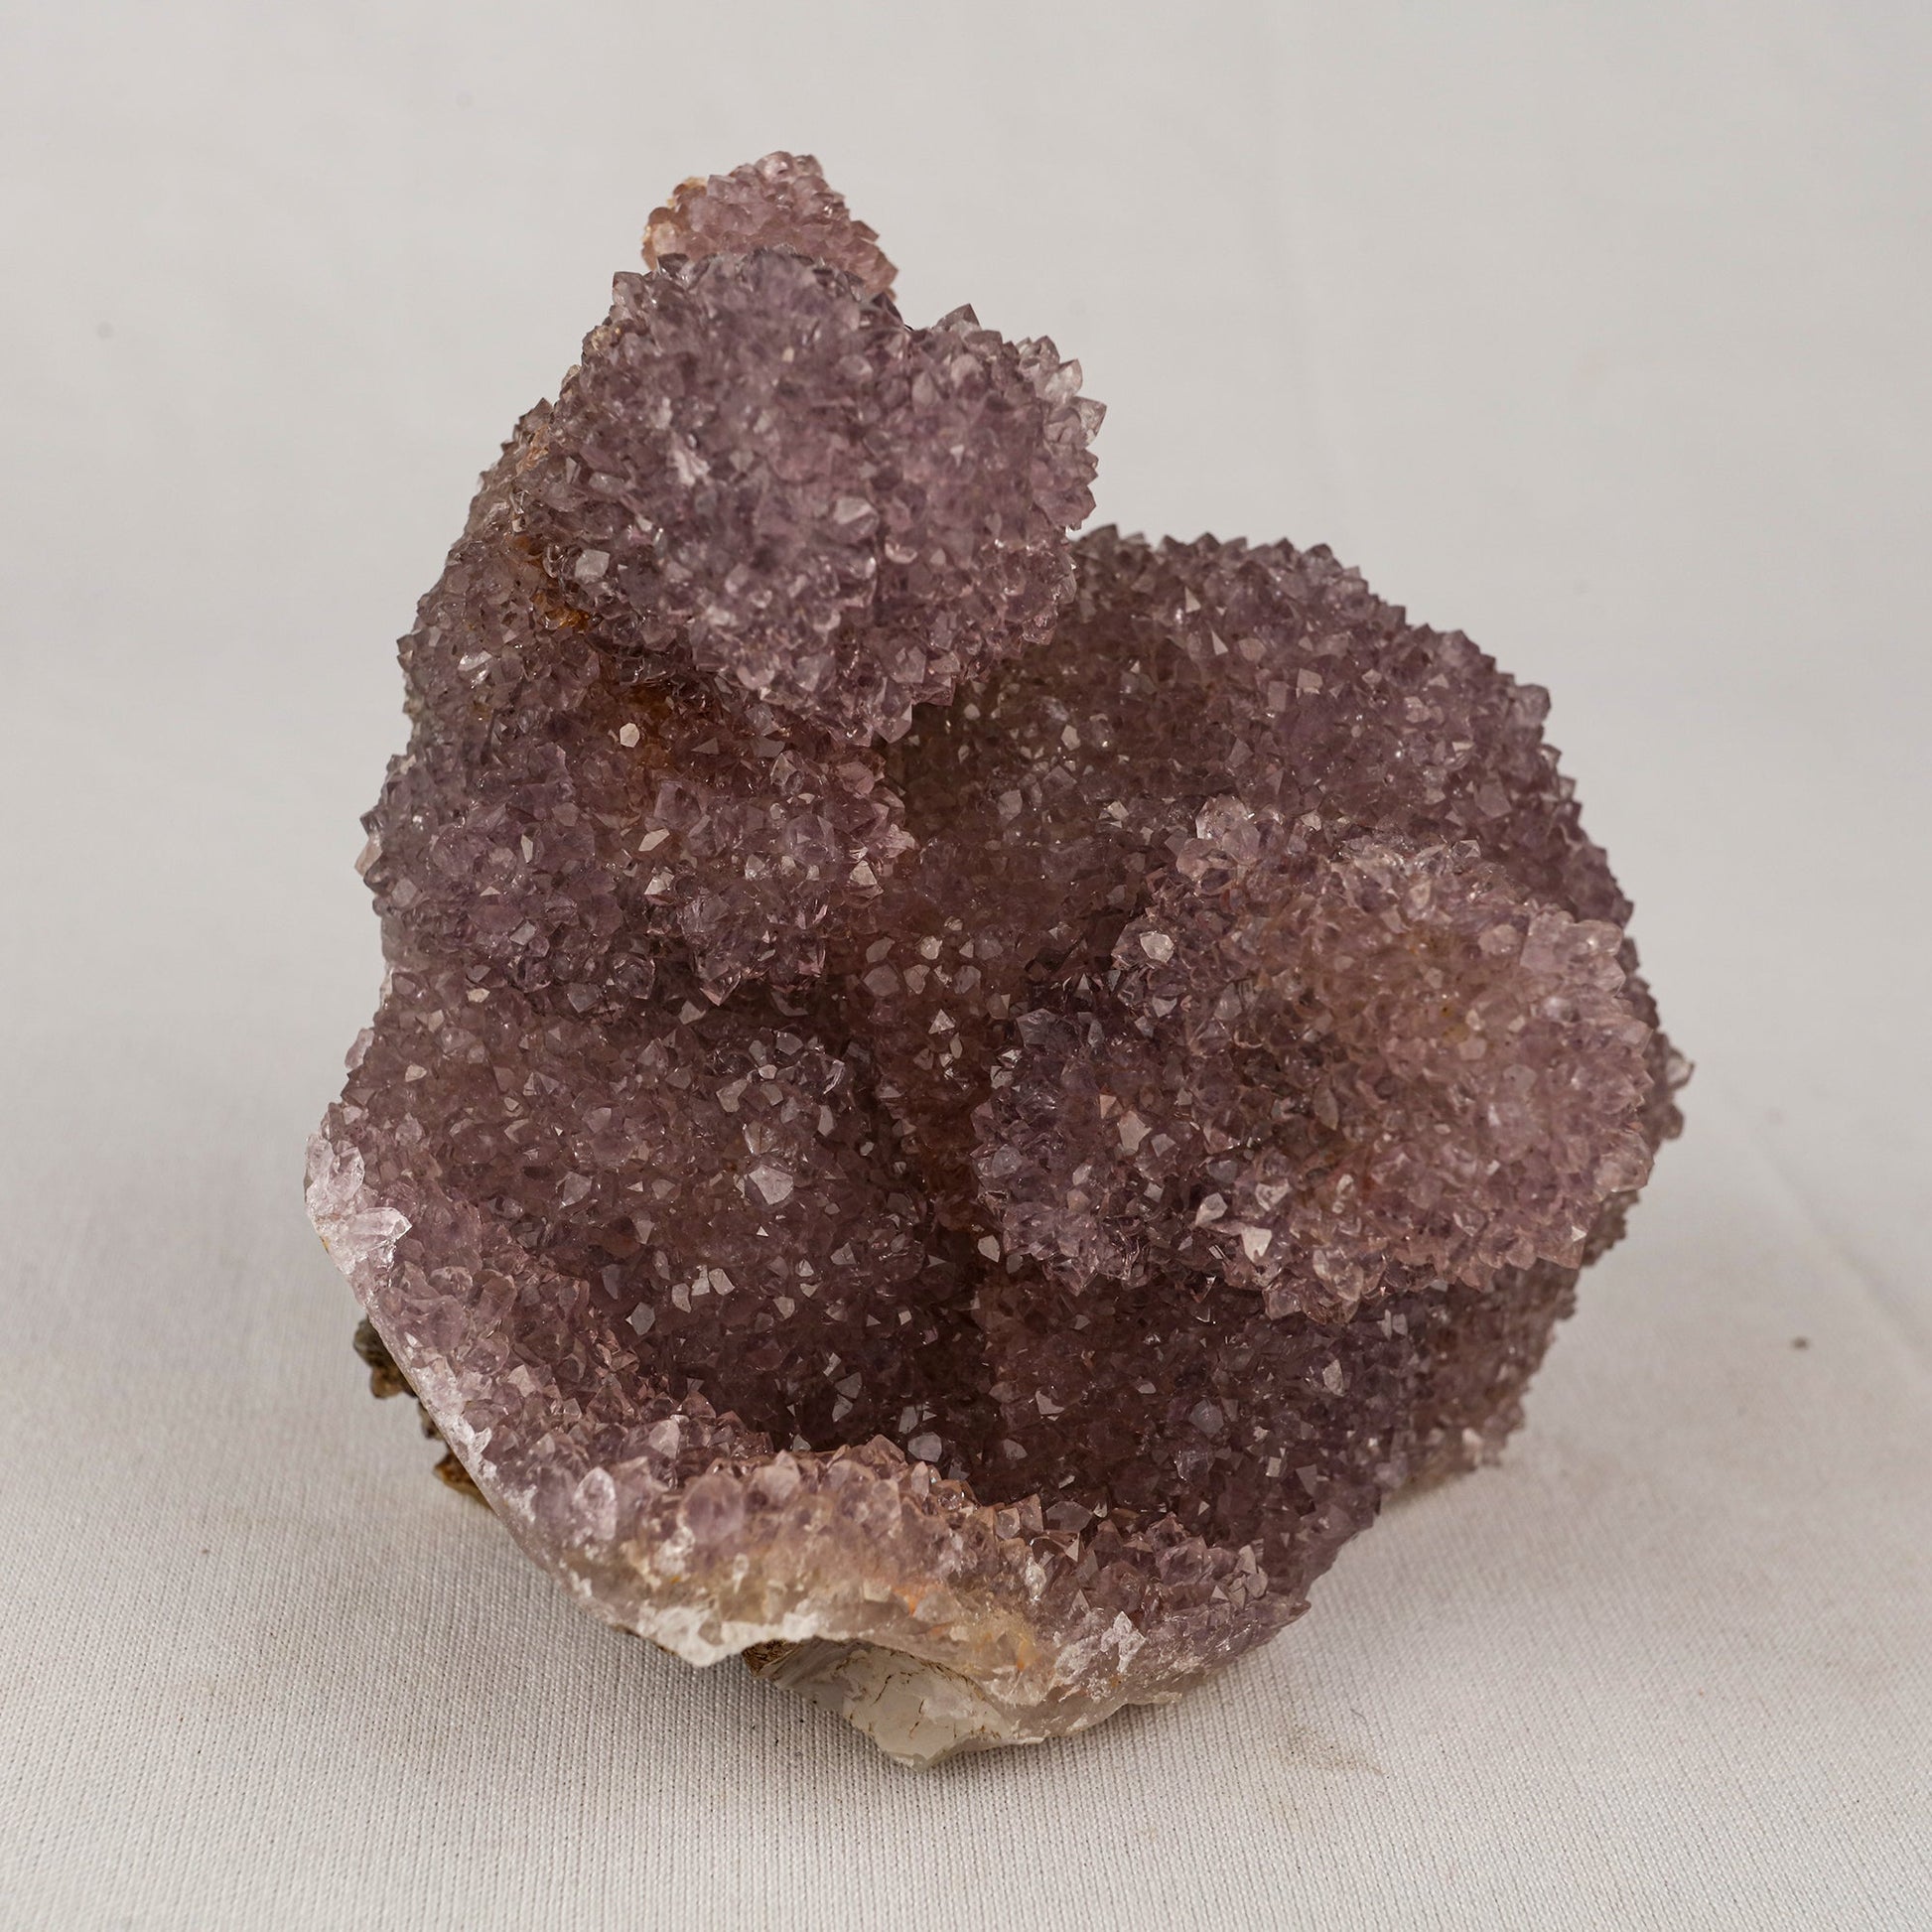 Amethyst Sprakling Crystals Natural Mineral Specimen # B 5525 Amethyst Superb Minerals 